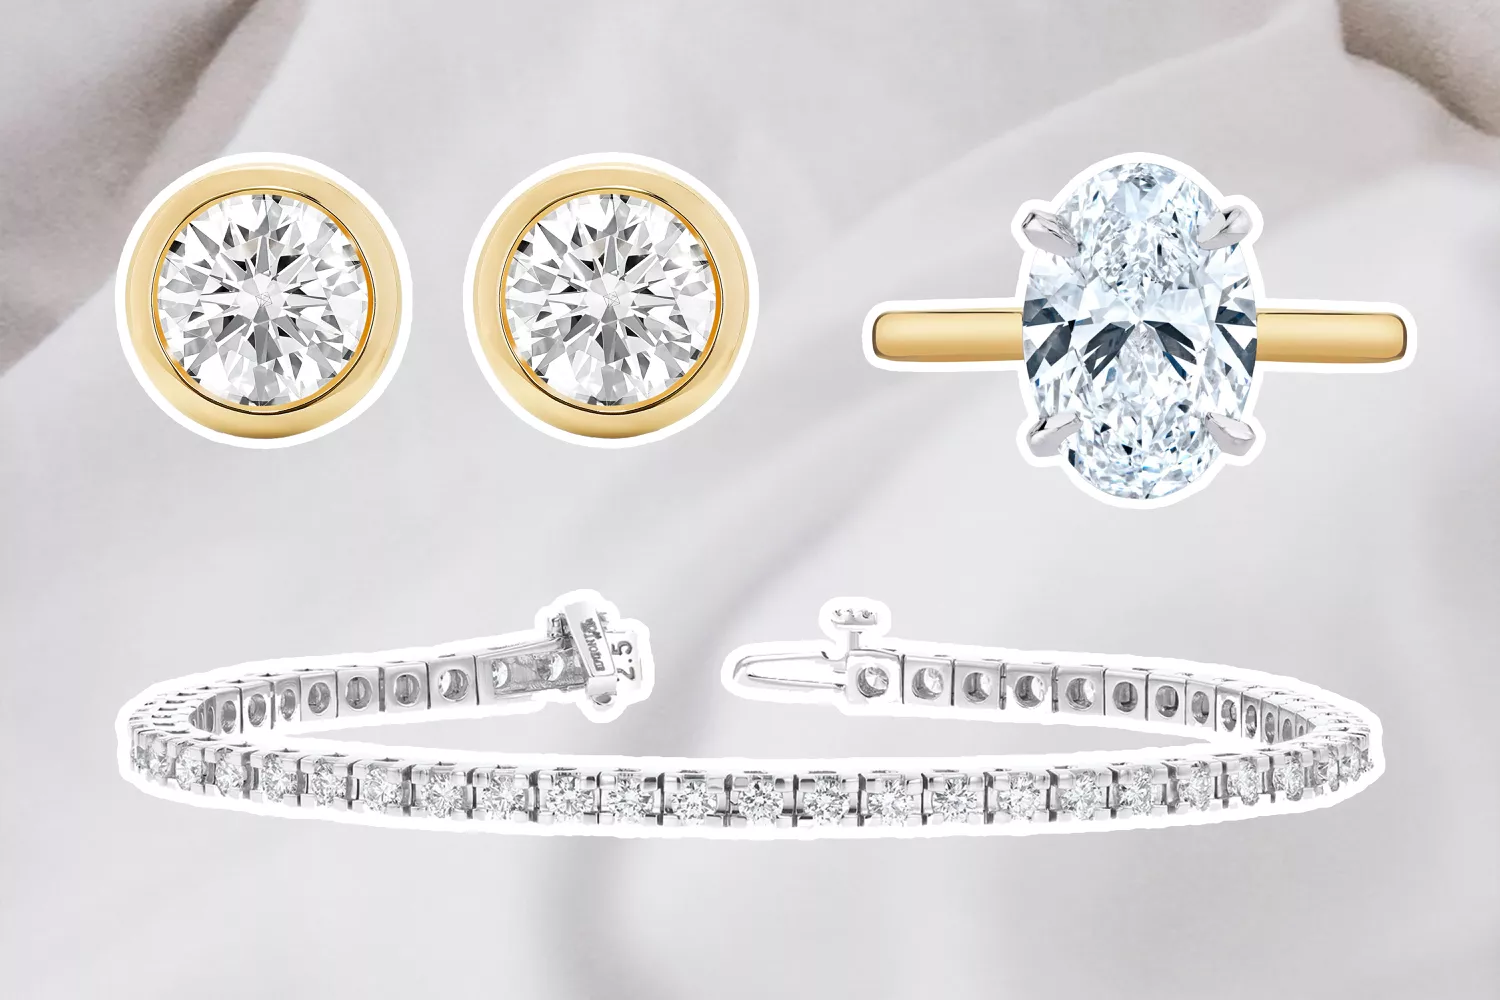 Best Lab-Grown Diamond Jewelry